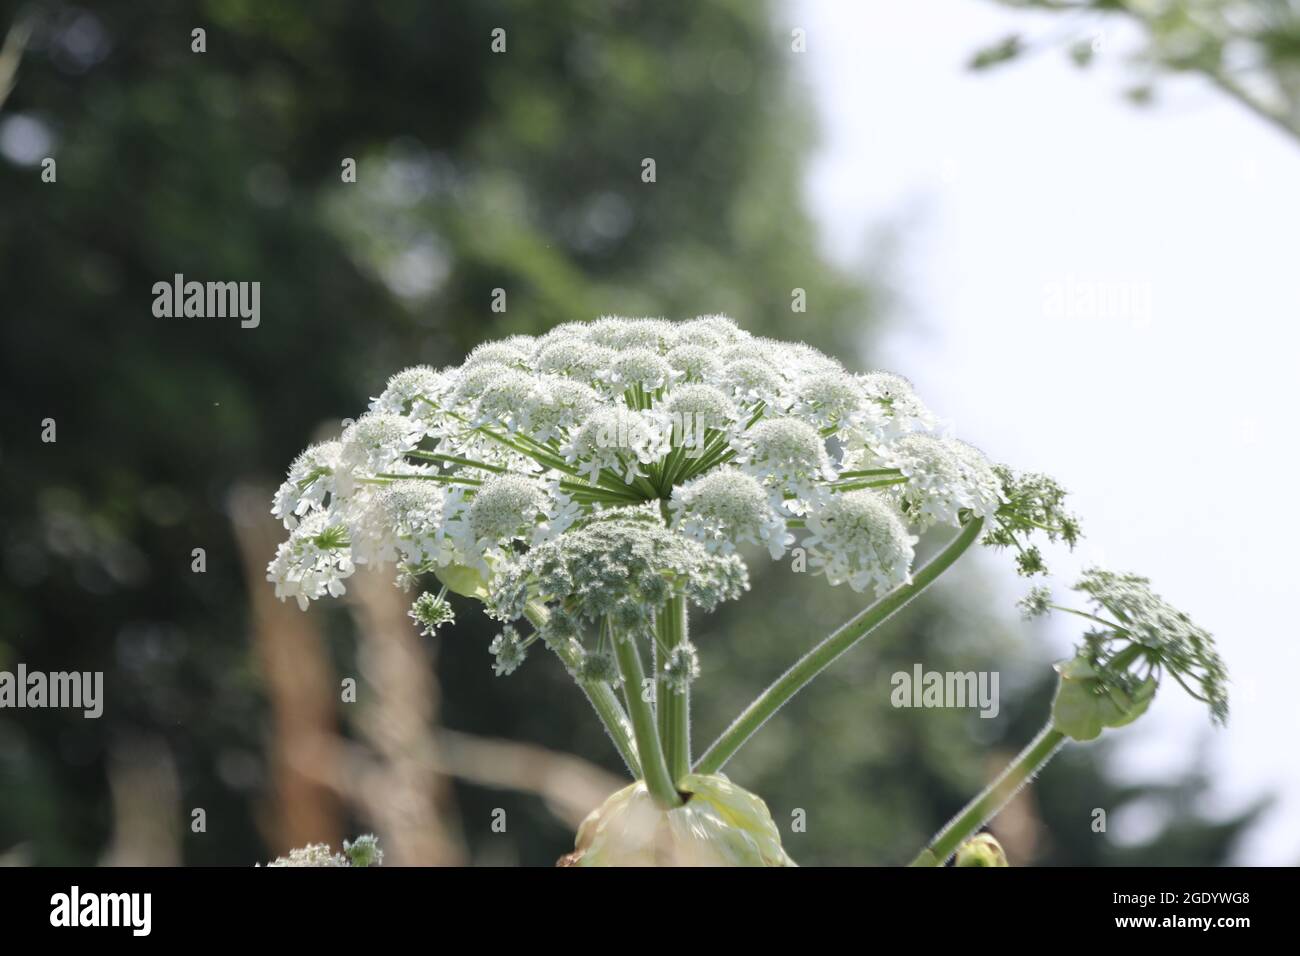 Die Pflanze blüht am Straßenrand und verursacht allergische Reaktionen und  Verbrennungen Stockfotografie - Alamy